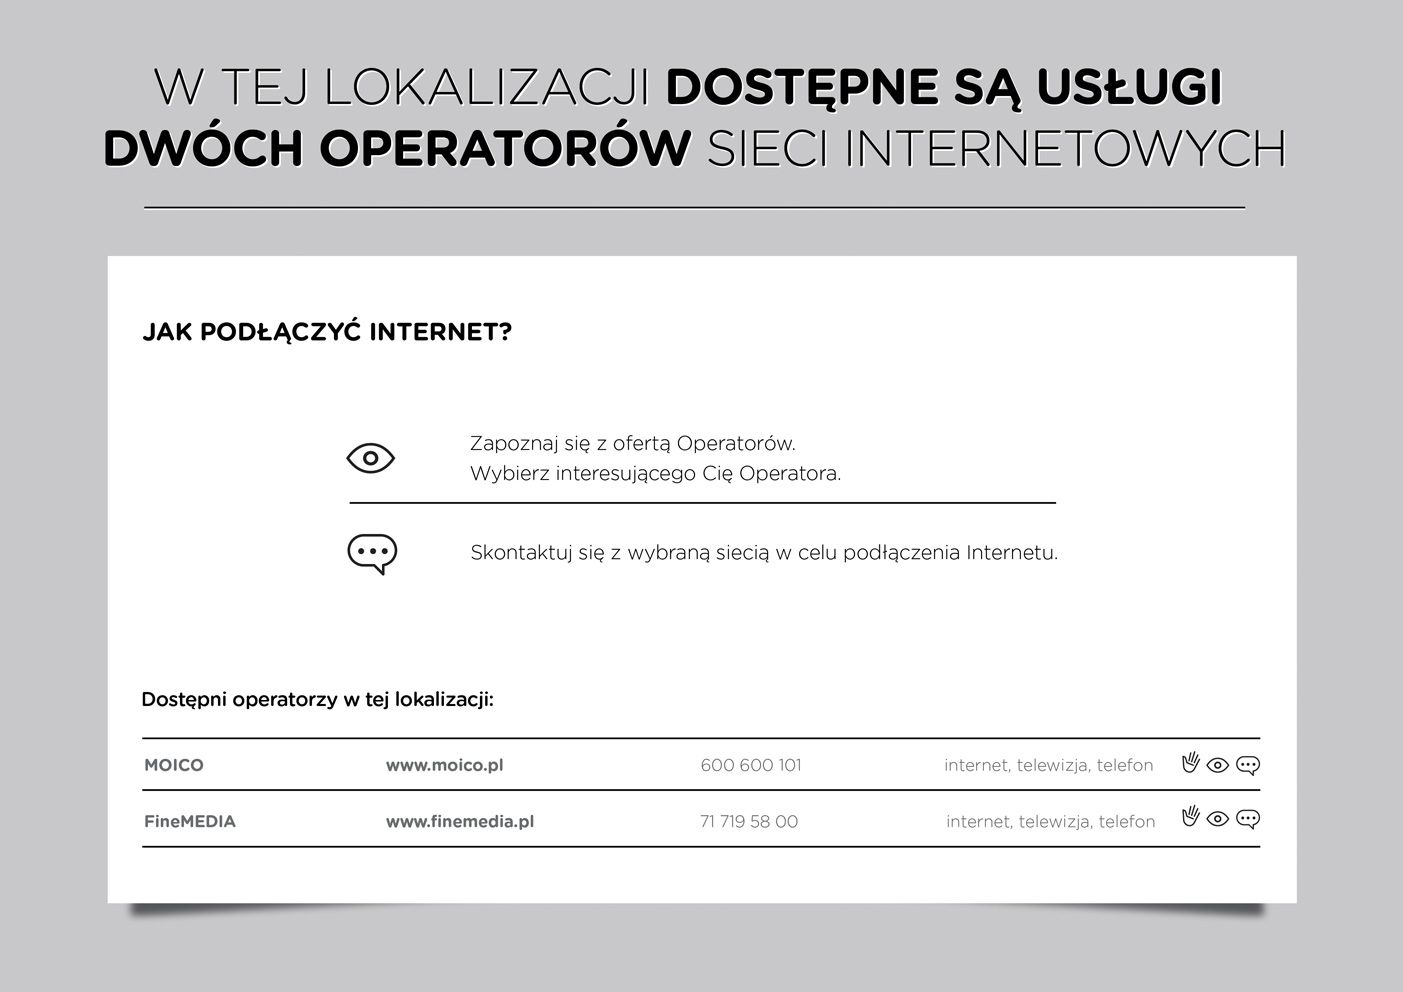 Demokratyzacja internetu zaczyna się we Wrocławiu, mat. prasowe